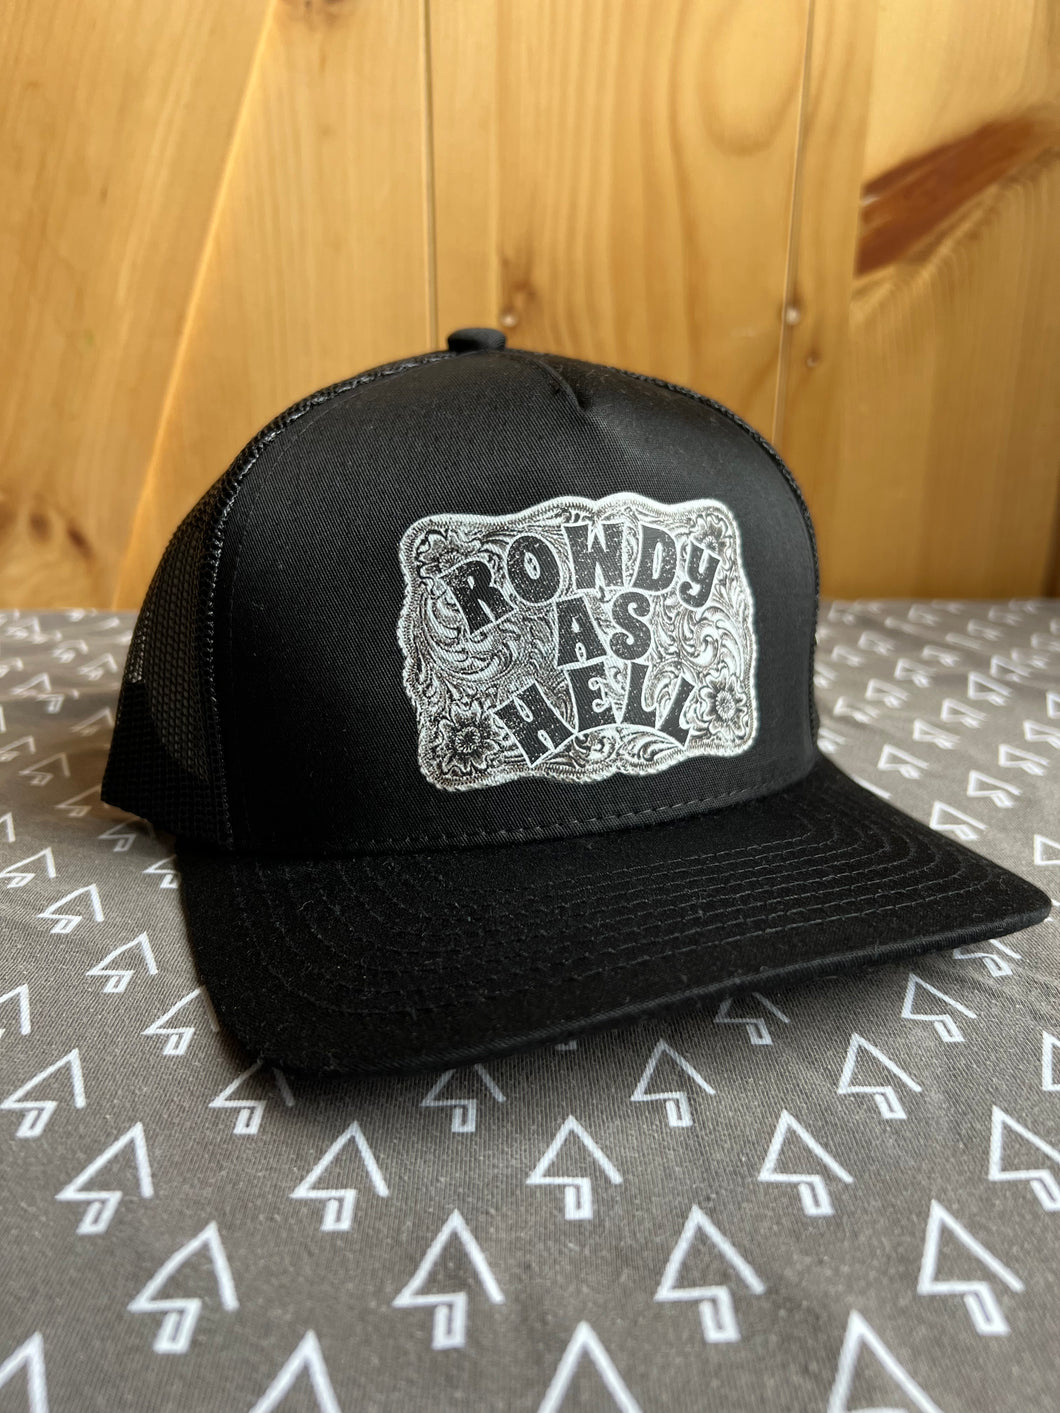 Rowdy As Hell Trucker Hat